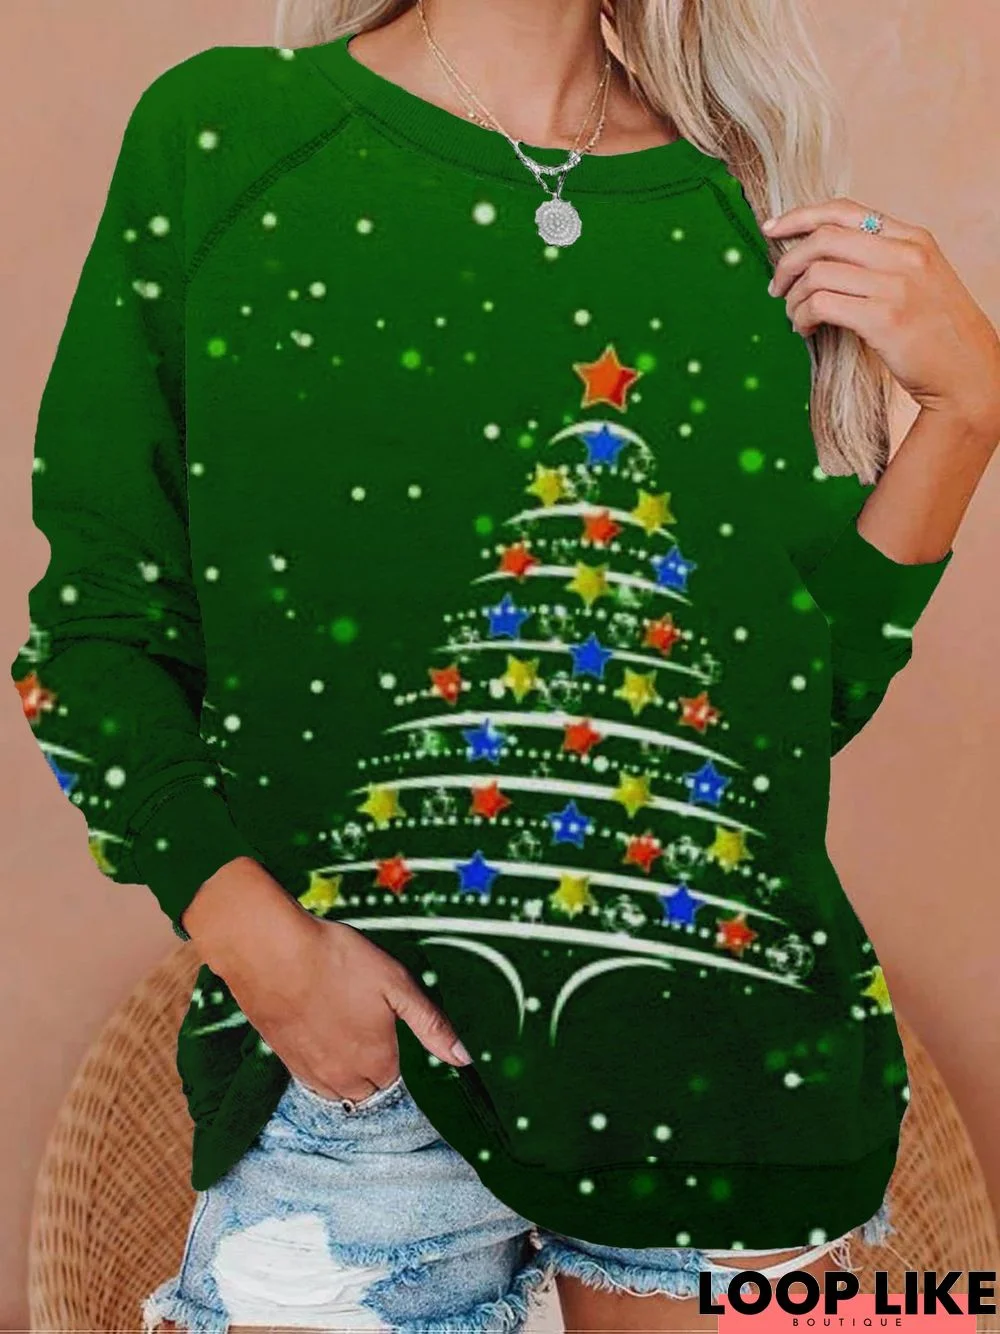 Christmas Xmas Tree Long Sleeve Round Neck Printed Top Sweatshirt Xmas Hoodies